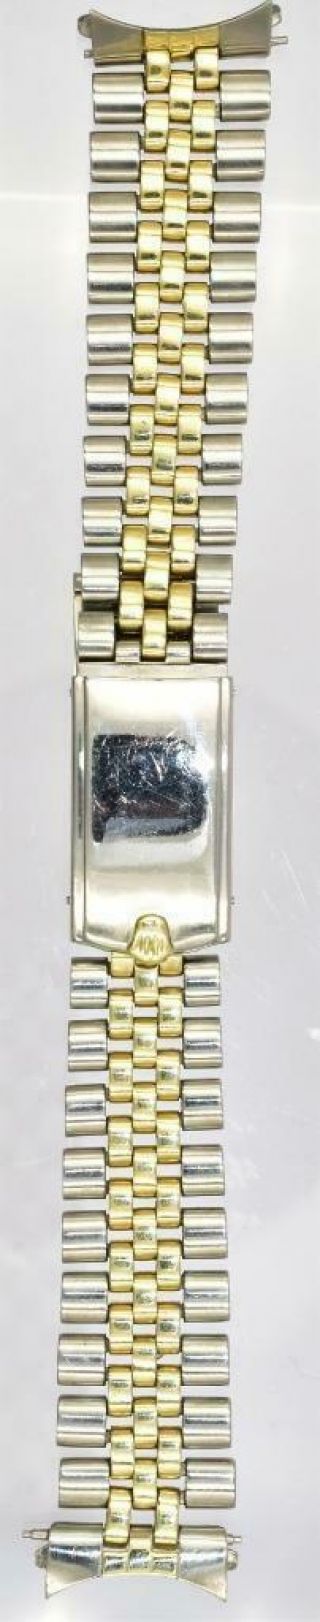 Rare Men ' s Two - Tone Rolex Oyster Perpetual Date Wristwatch Ref 1505 Circa 1968/9 4